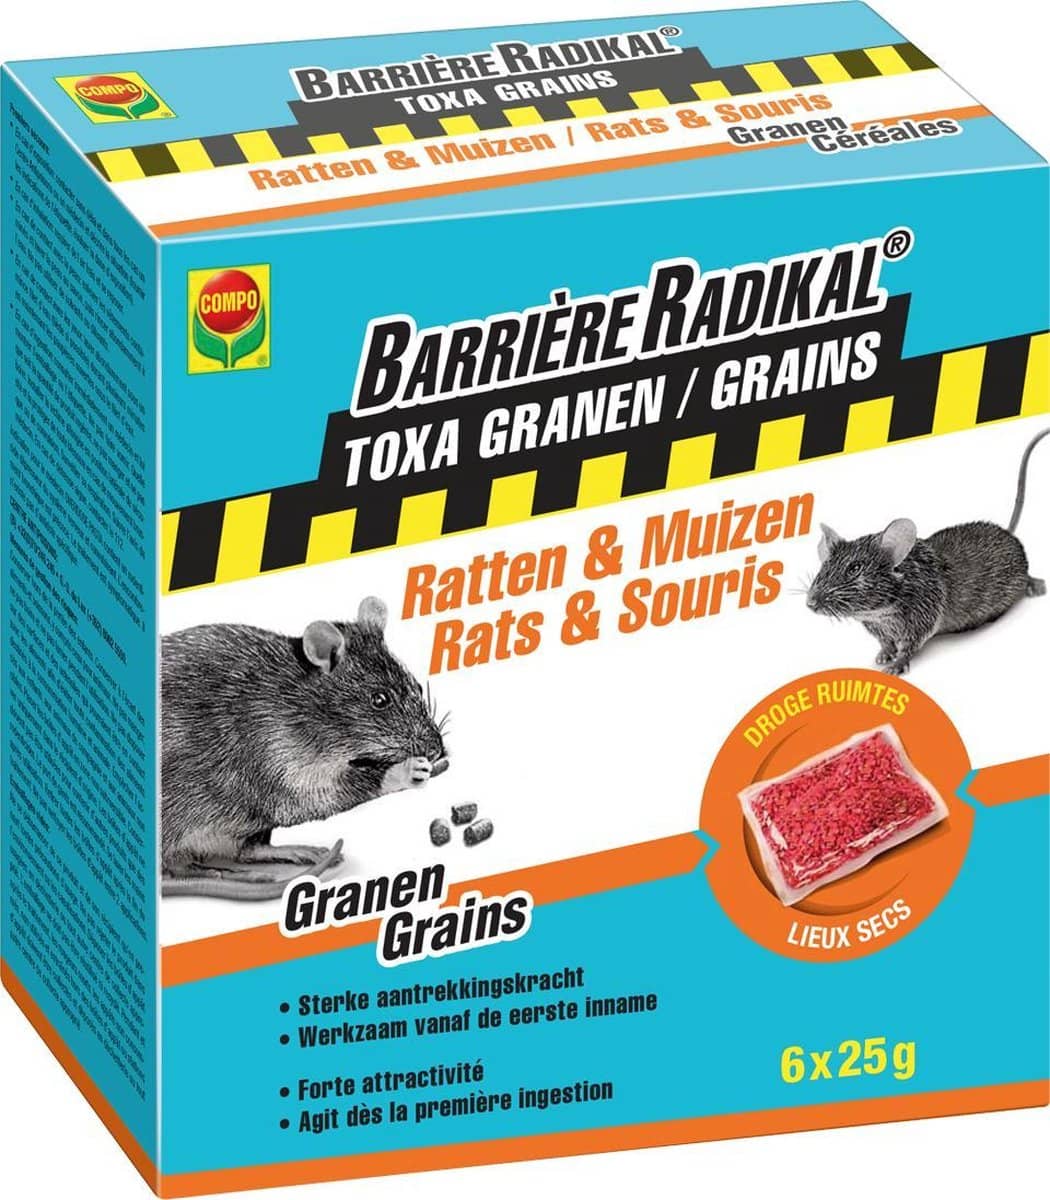 Barrière Radikal – Toxa Granen Ratten en Muizen – 6 x 25 g. Lokaas en gif in één